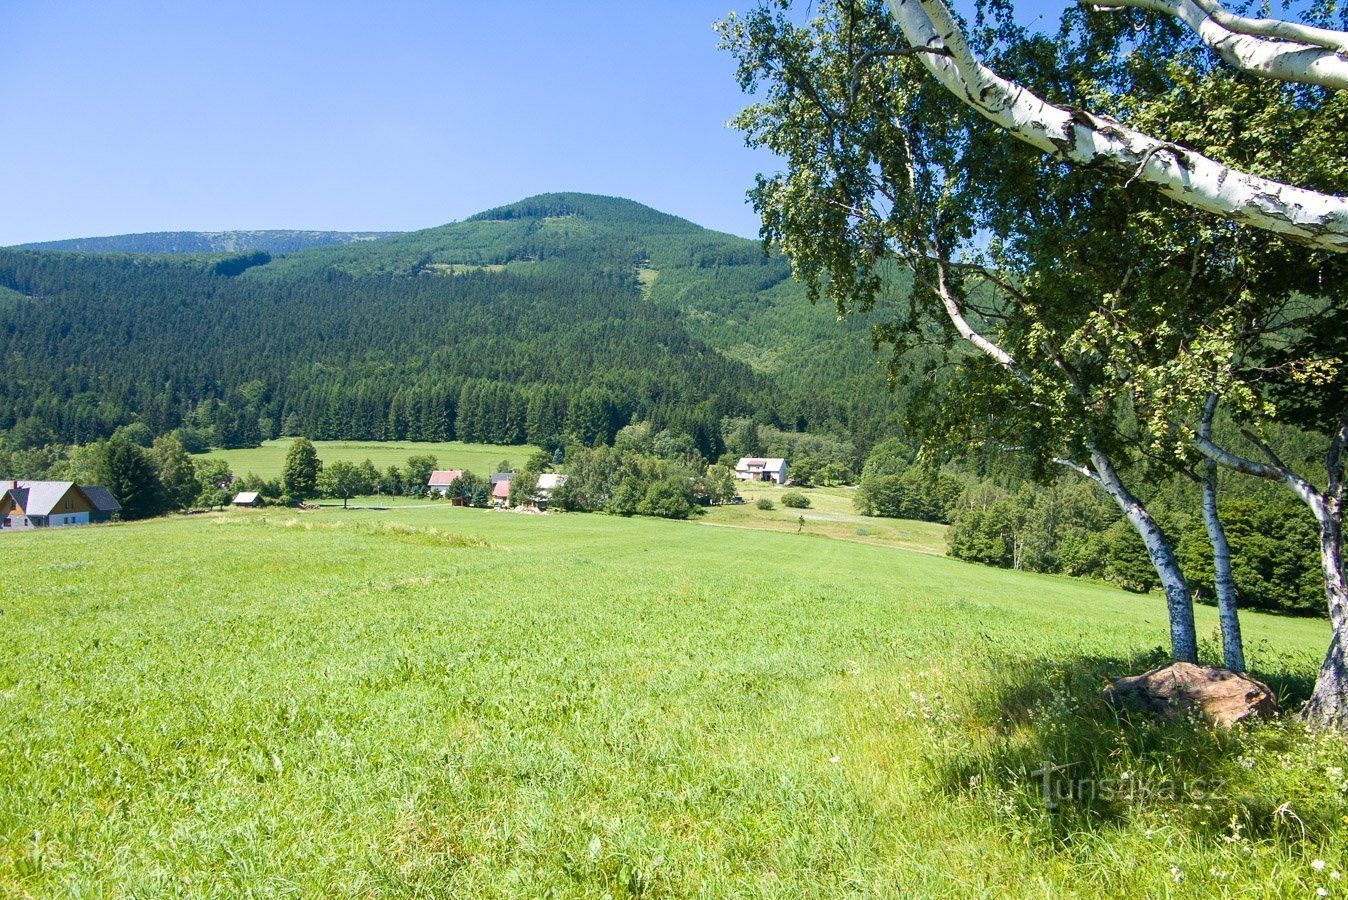 Točník és a kissé rejtett Červená hora Filipovice fölé emelkedik